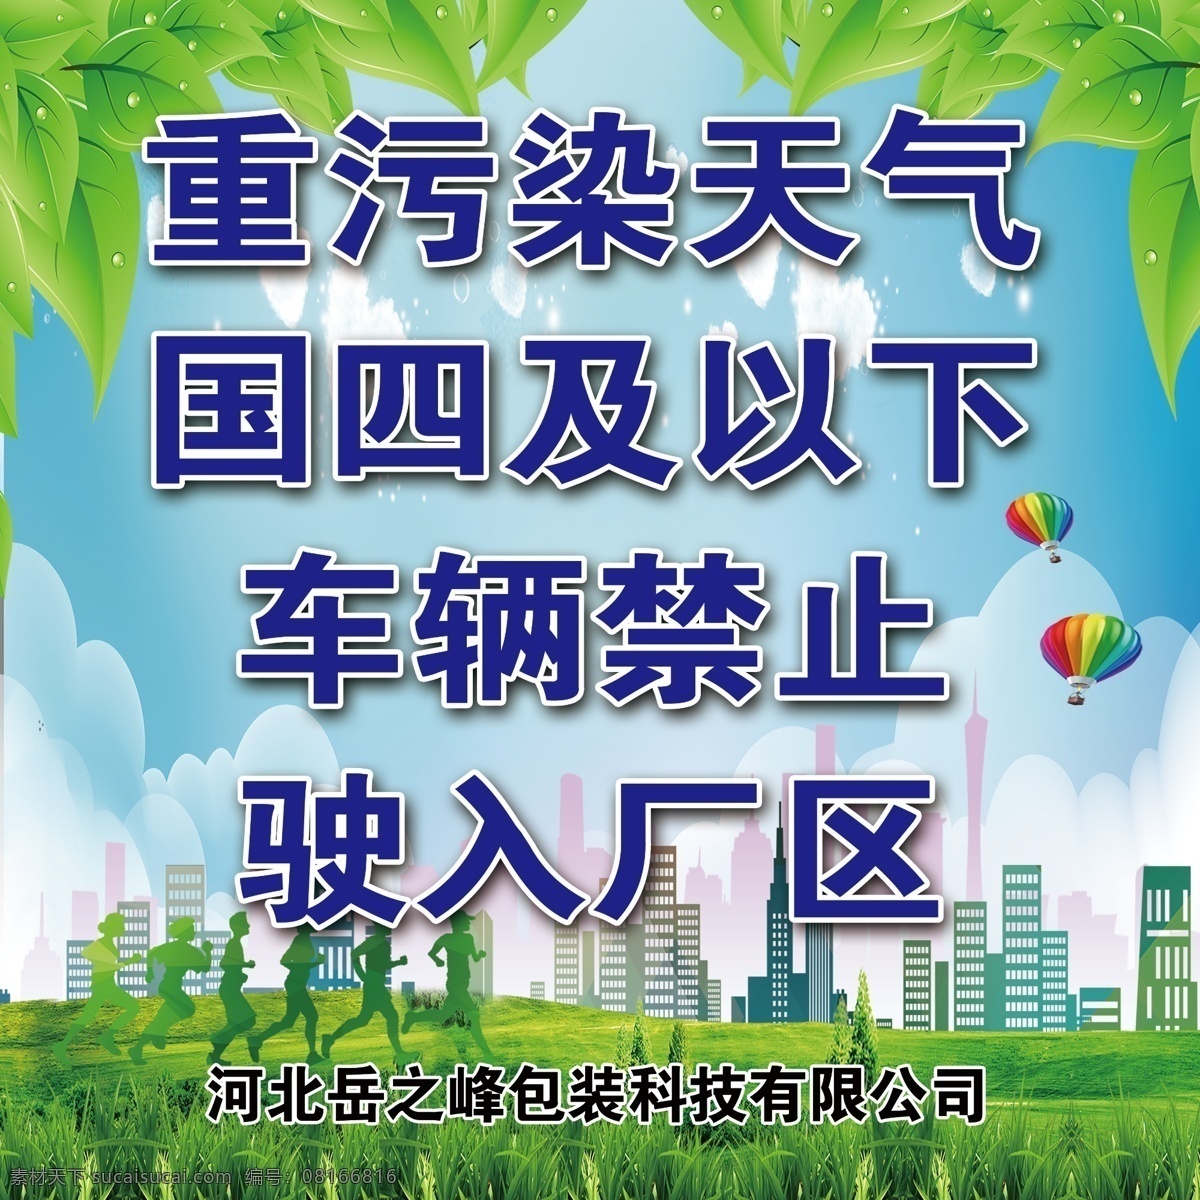 环保展板 环保 绿色展板 城市广告 绿色 新鲜空气 气球 城市建设 跑步 低碳环保